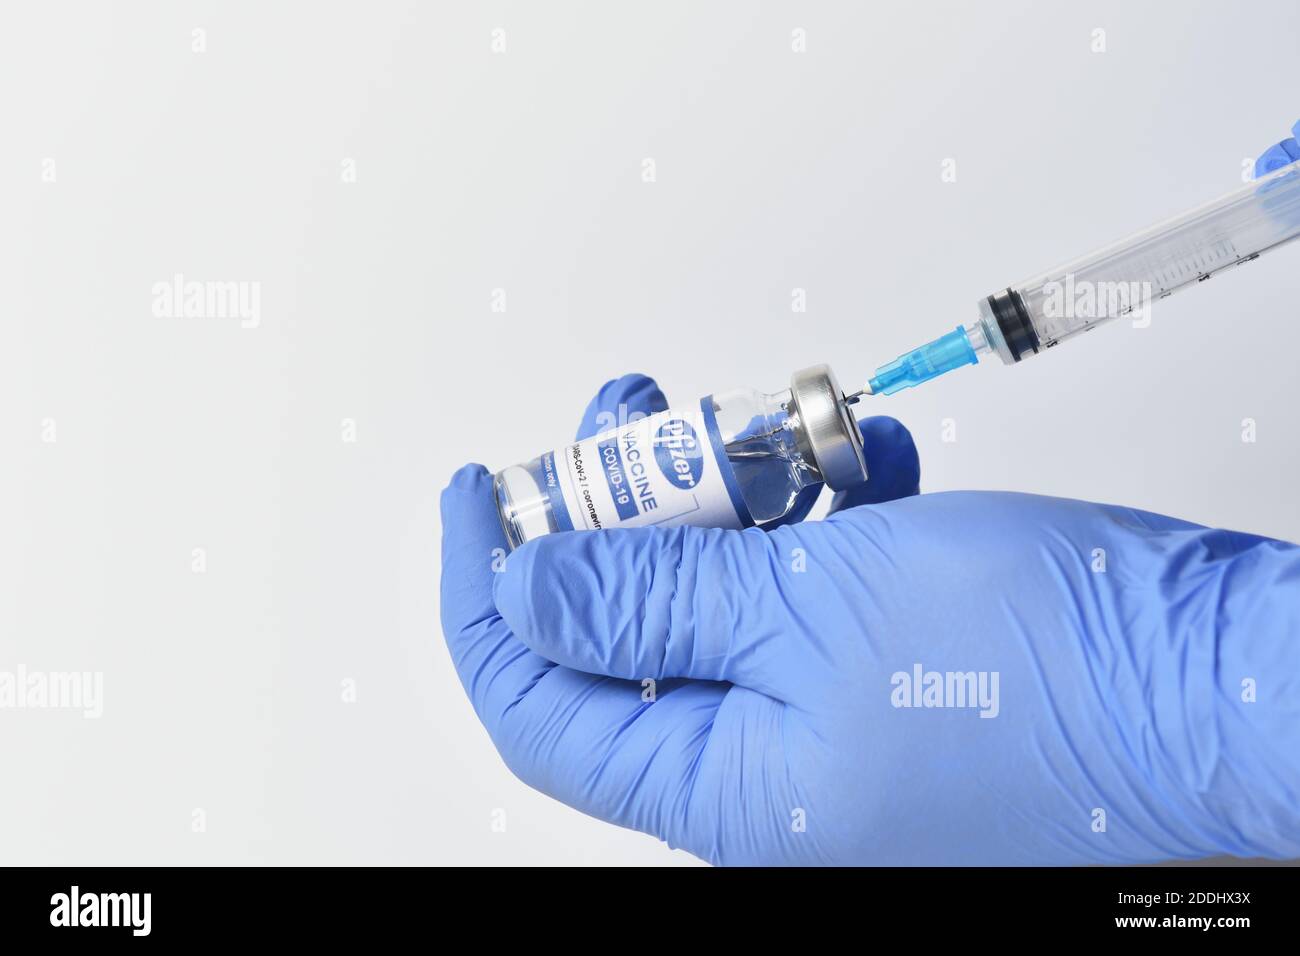 STARIY OSKOL, RUSSIA - 23 NOVEMBRE 2020: Il concetto di protezione e vaccinazione contro il coronavirus con il nuovo vaccino di Pfizer Foto Stock